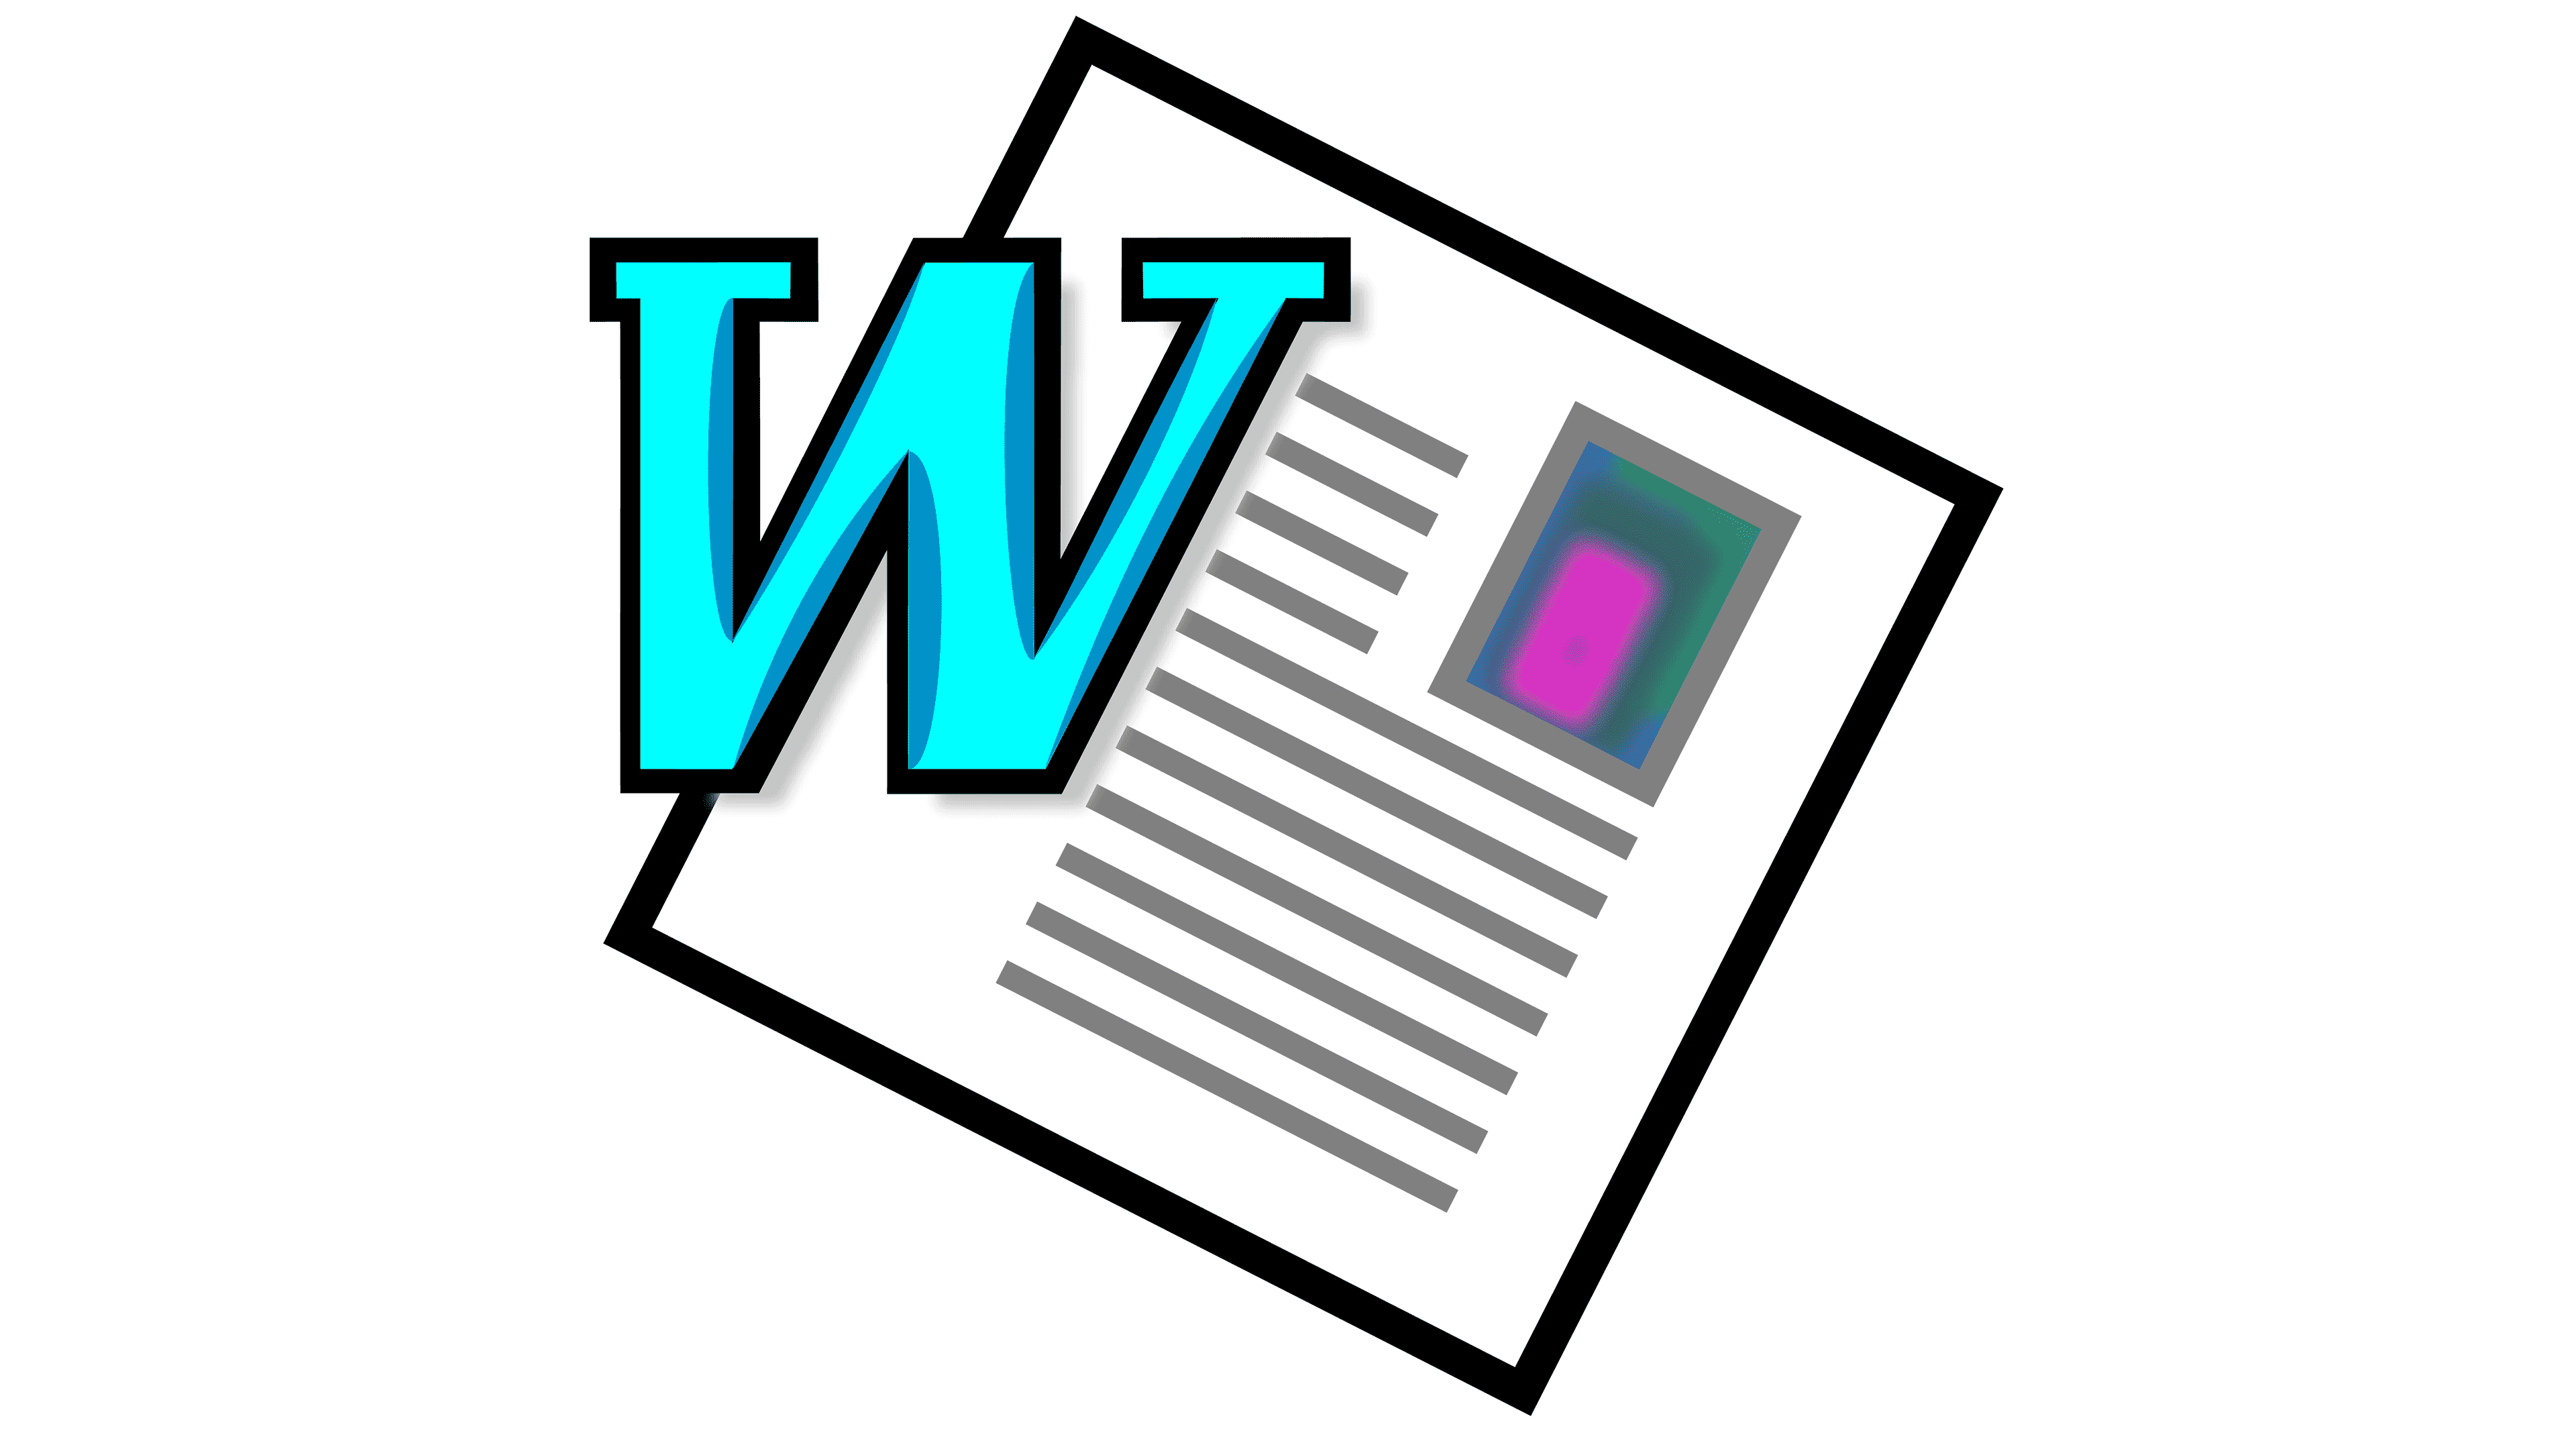 Логотипы текстовых редакторов. Ворд лого. Microsoft Word 97. Microsoft Word 1997. Word 97 2003